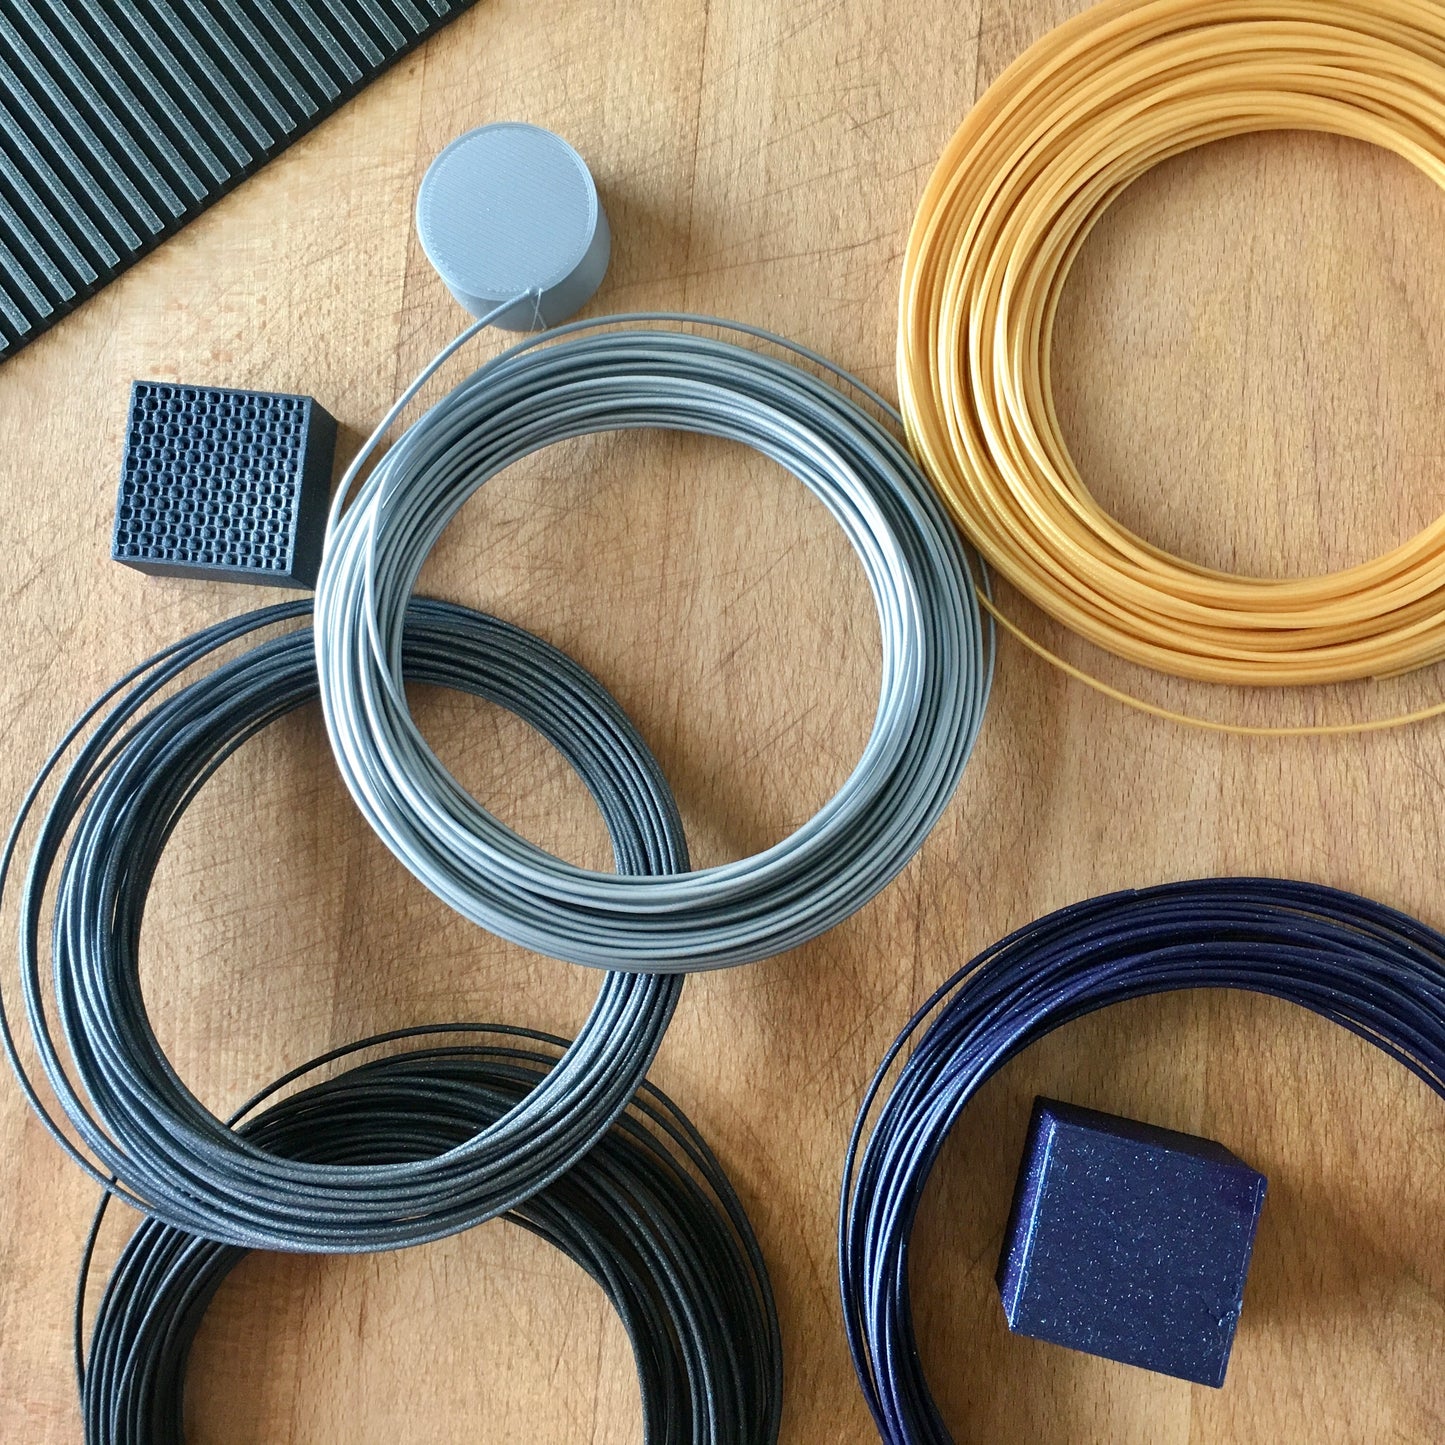 Fiberlogy EASY PLA 3D Printer Filament Samples 5 Special Colors 